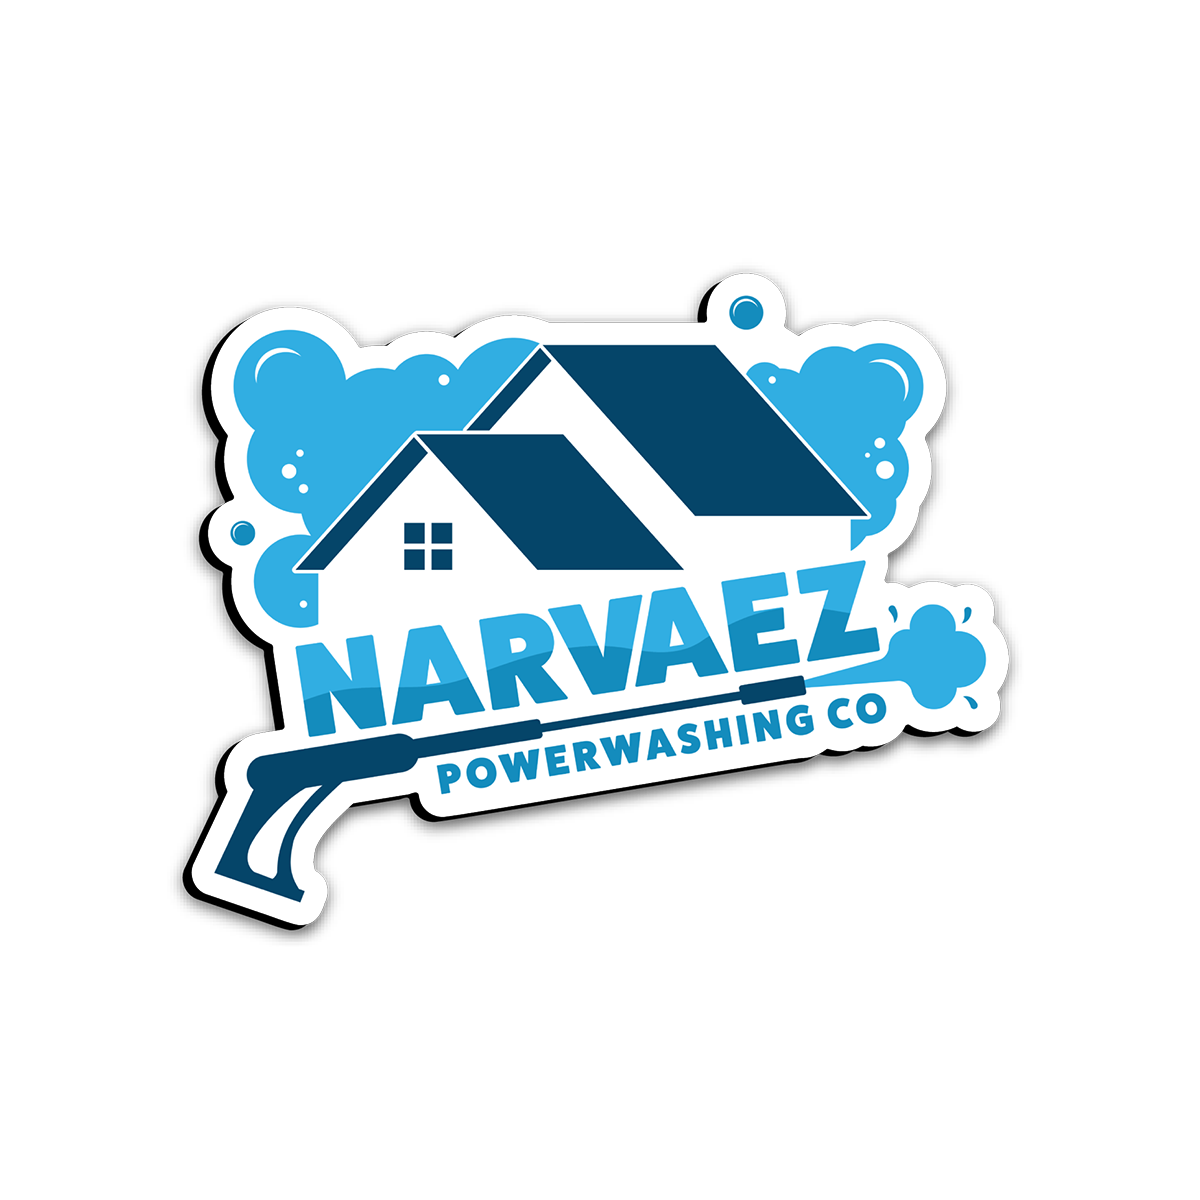 MAGNET | NARVAEZ POWERWASHING CO